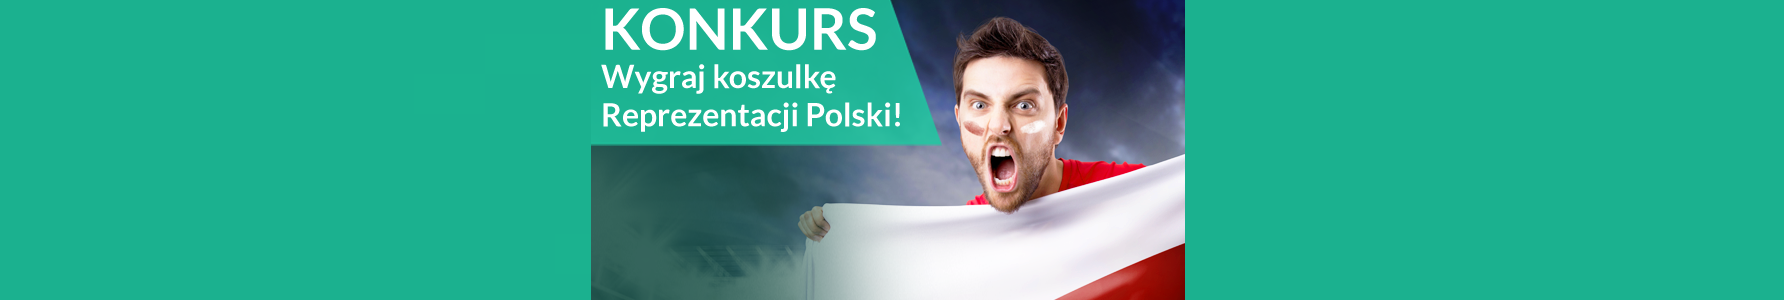 Konkurs! Koszulka Reprezentacji Polski z autografami do wygrania!